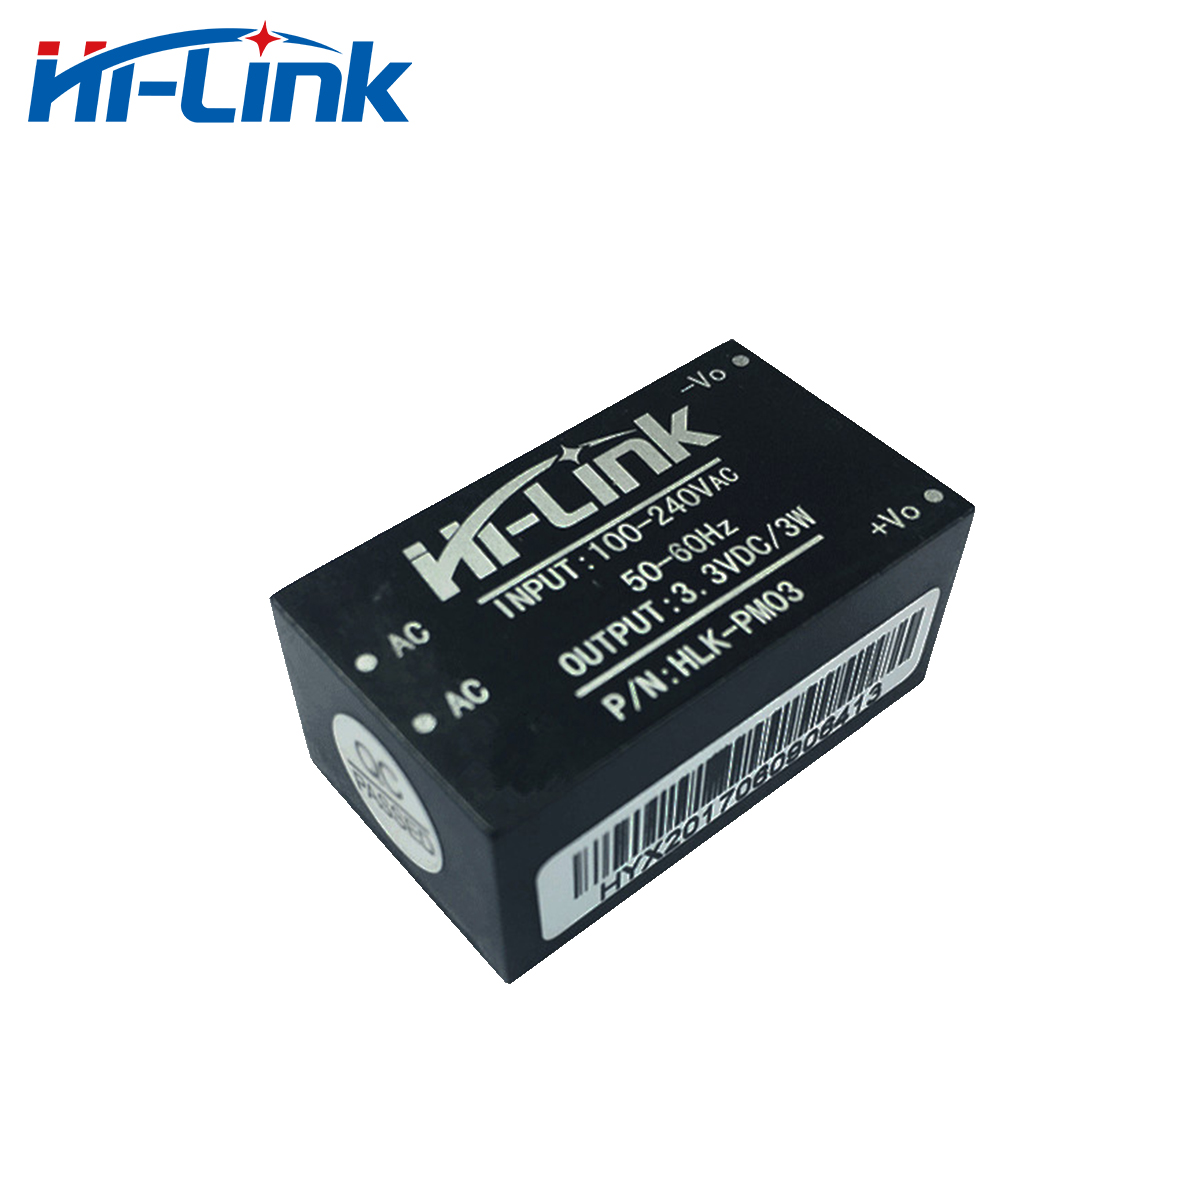 Hi-Link Factory Original Price 220V to 3W 3.3V 1A AC DC Power Supply Module Customized